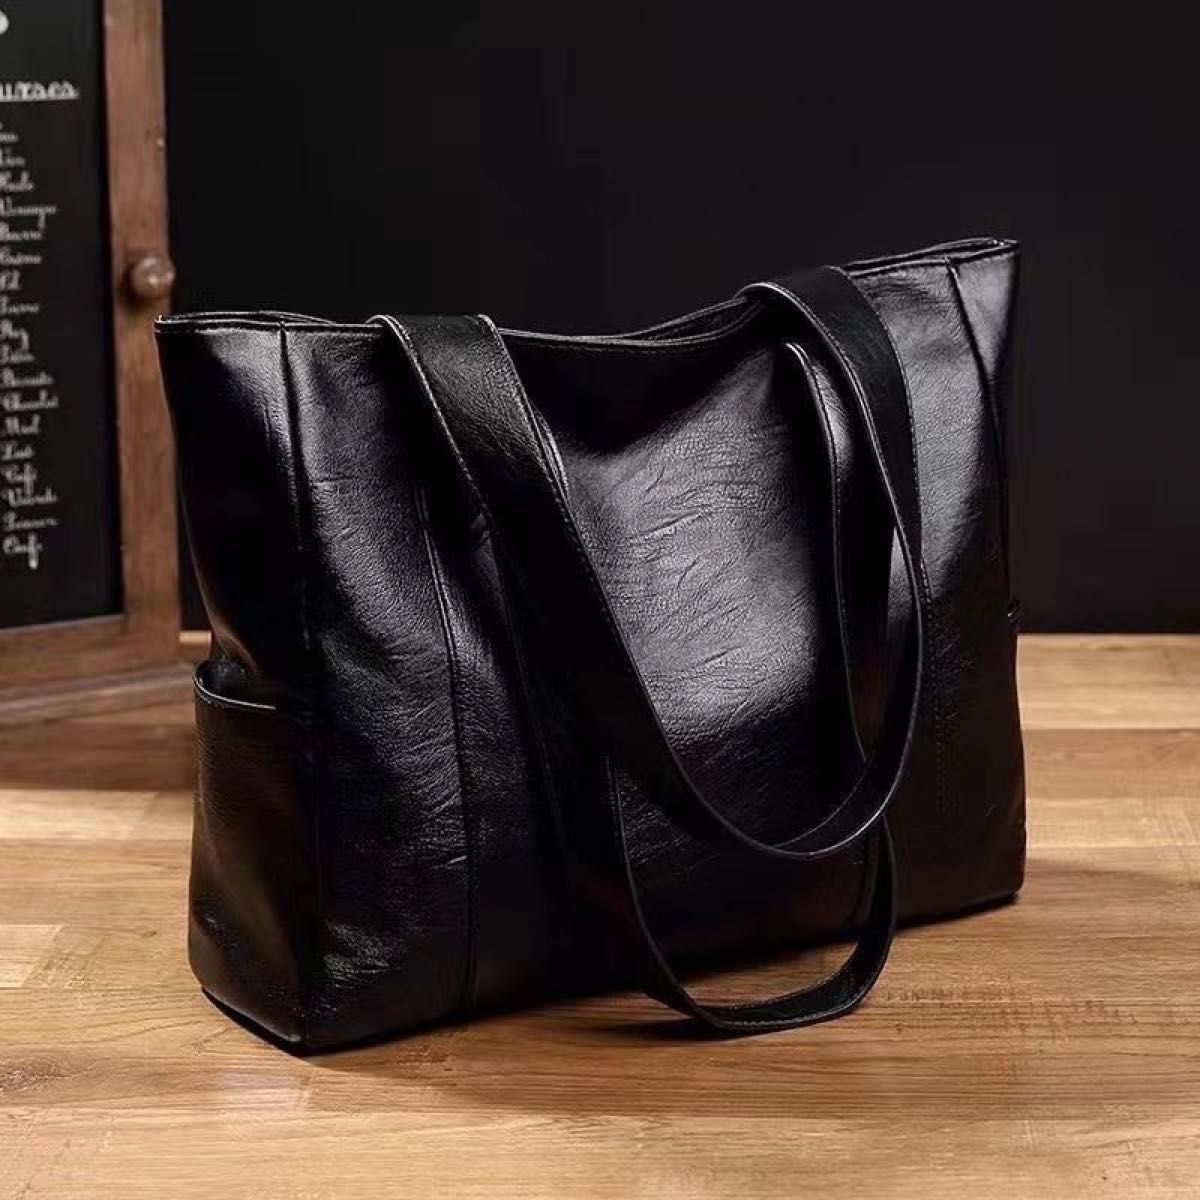 【値引きOK】トートバッグ レザー ブラック 黒 ビジネスバッグ シンプル メンズ レディース 男女兼用 シンプルバッグ